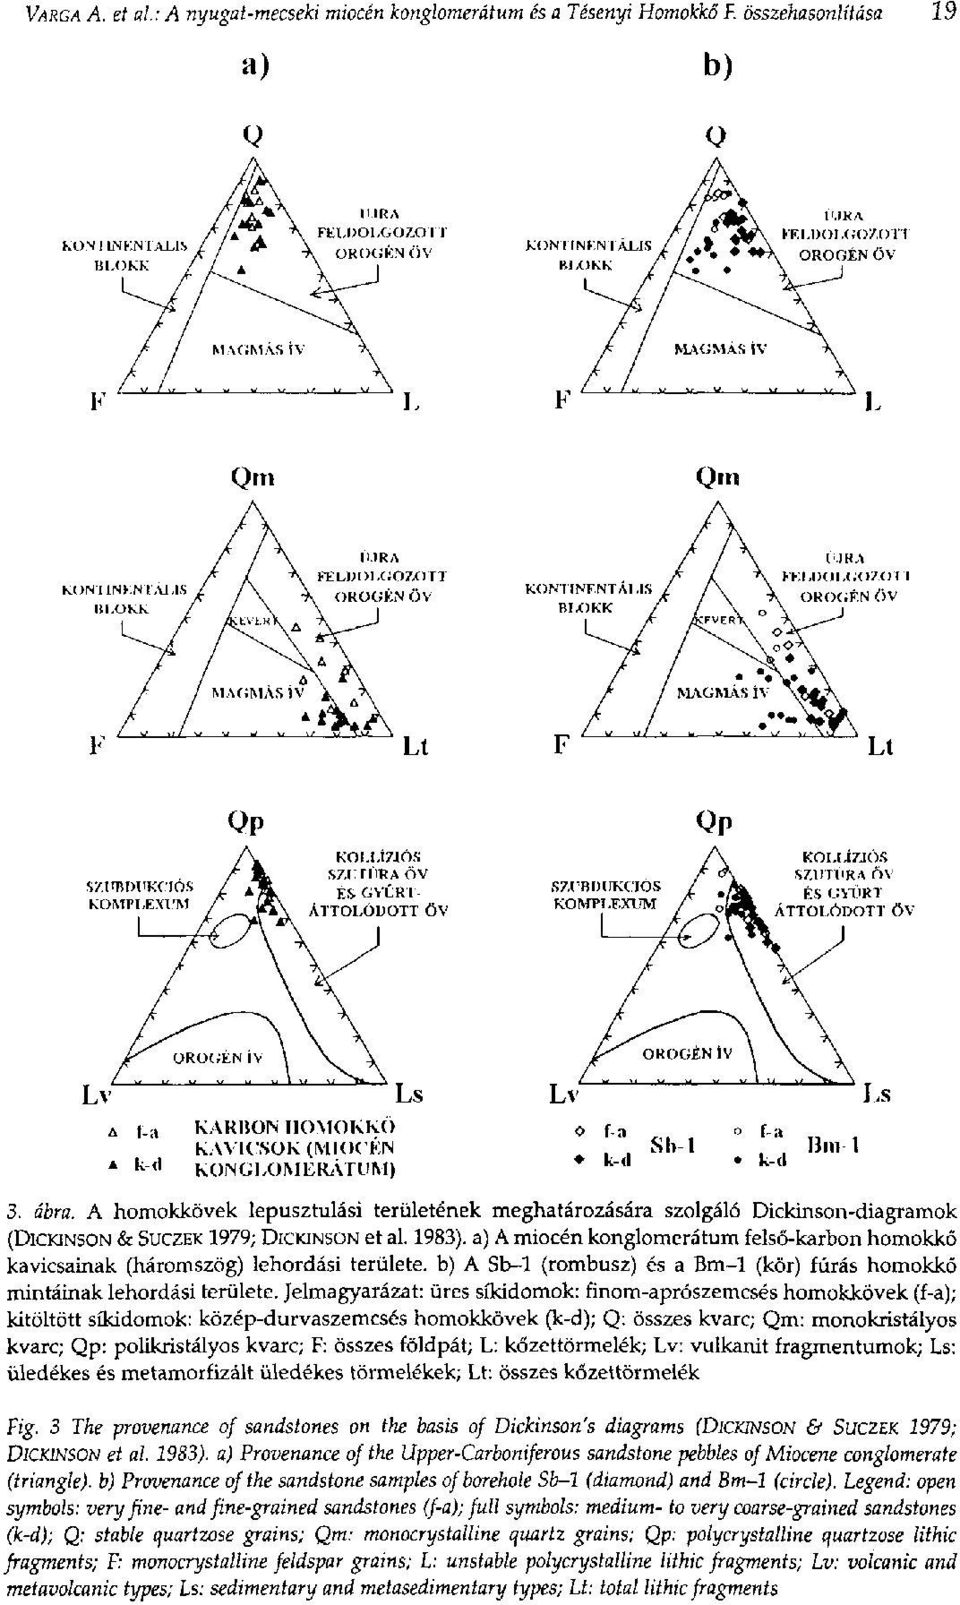 A homokkövek lepusztulási területének meghatározására szolgáló Dickinson-diagramok (DICKINSON & SUCZEK 1979; DICKINSON et al. 1983).